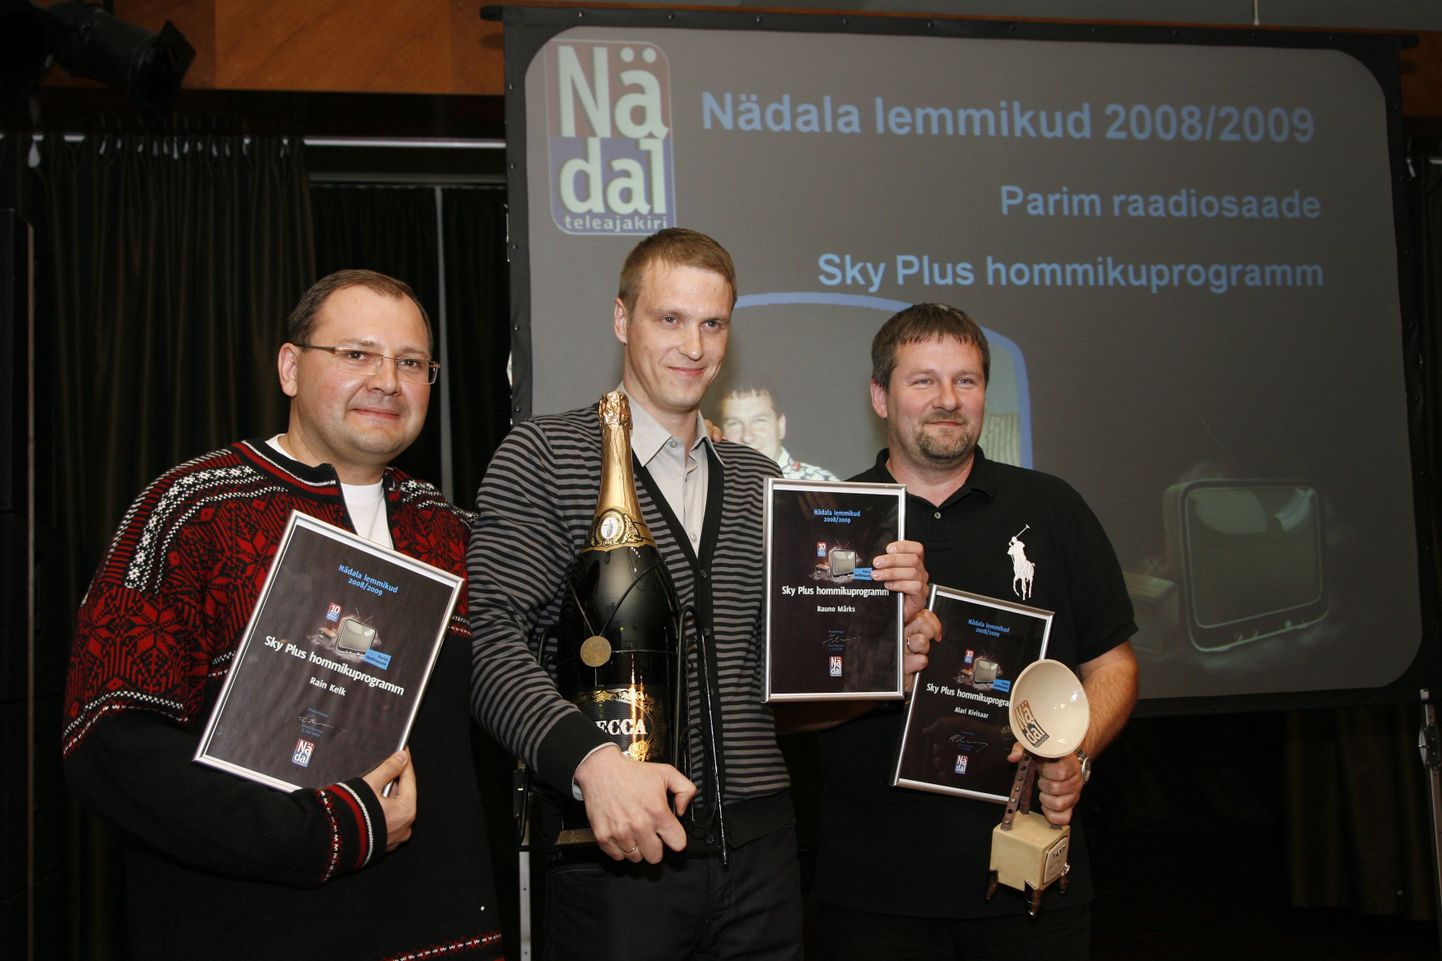 Ajakirja NÄDAL lemmikud 2008/2009 kuulutati välja Viru hotelli restoranis Merineitsi. Pildil parim raadiosaade - SKY PLUS hommikuprogramm - RAIN KELK, RAUNO MÄRKS ja ALARI KIVISAAR